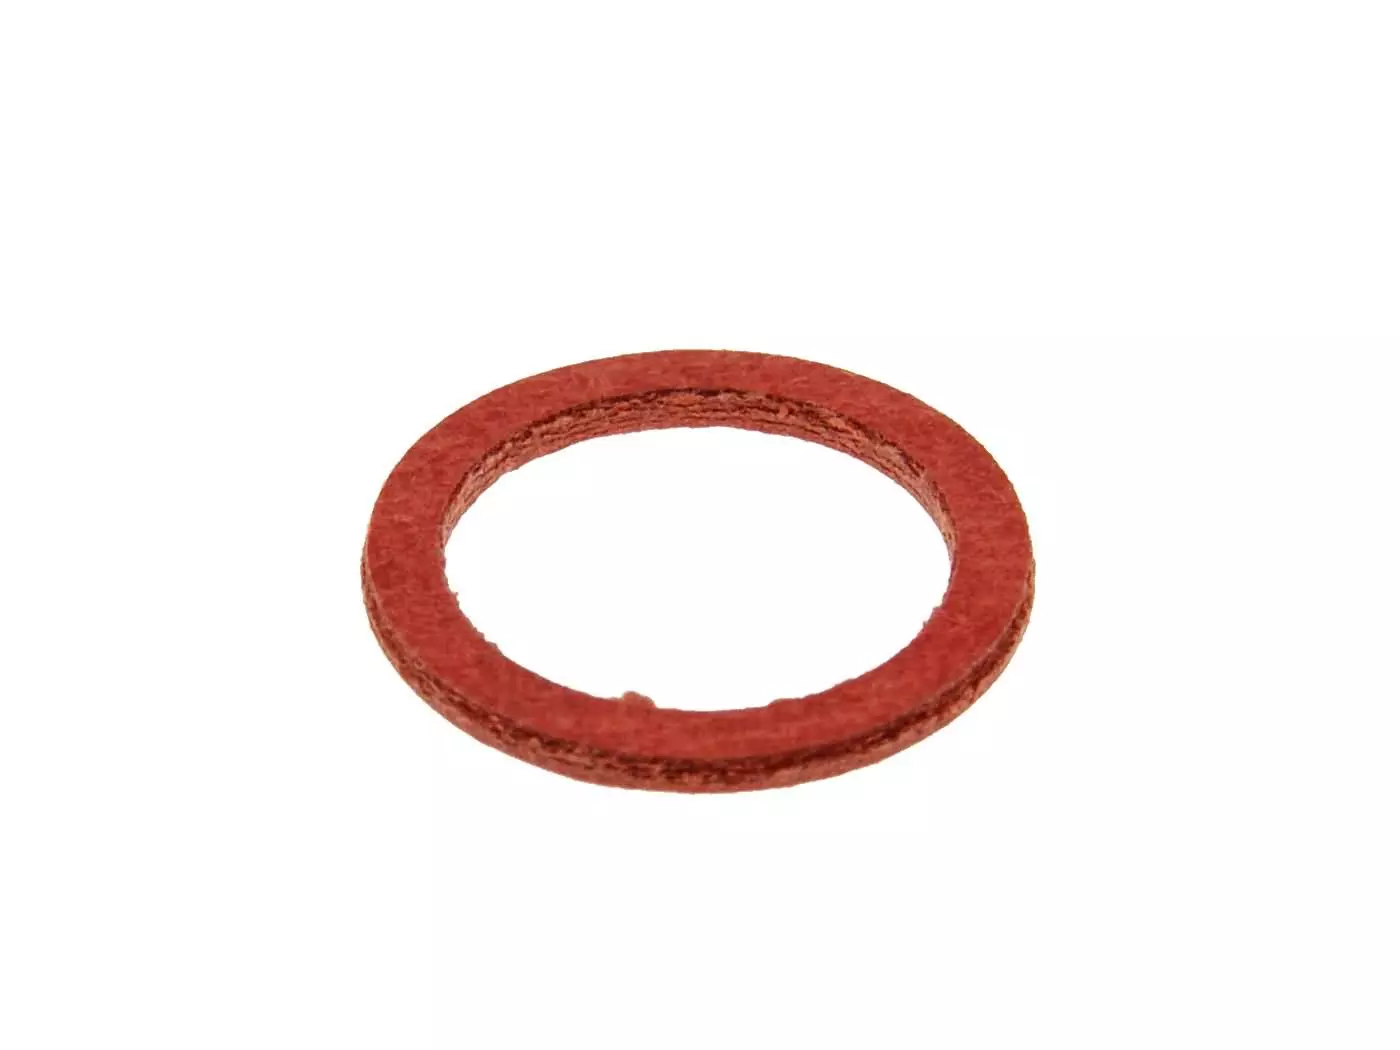 Fiber Seal Ring Naraku 11x15x1mm